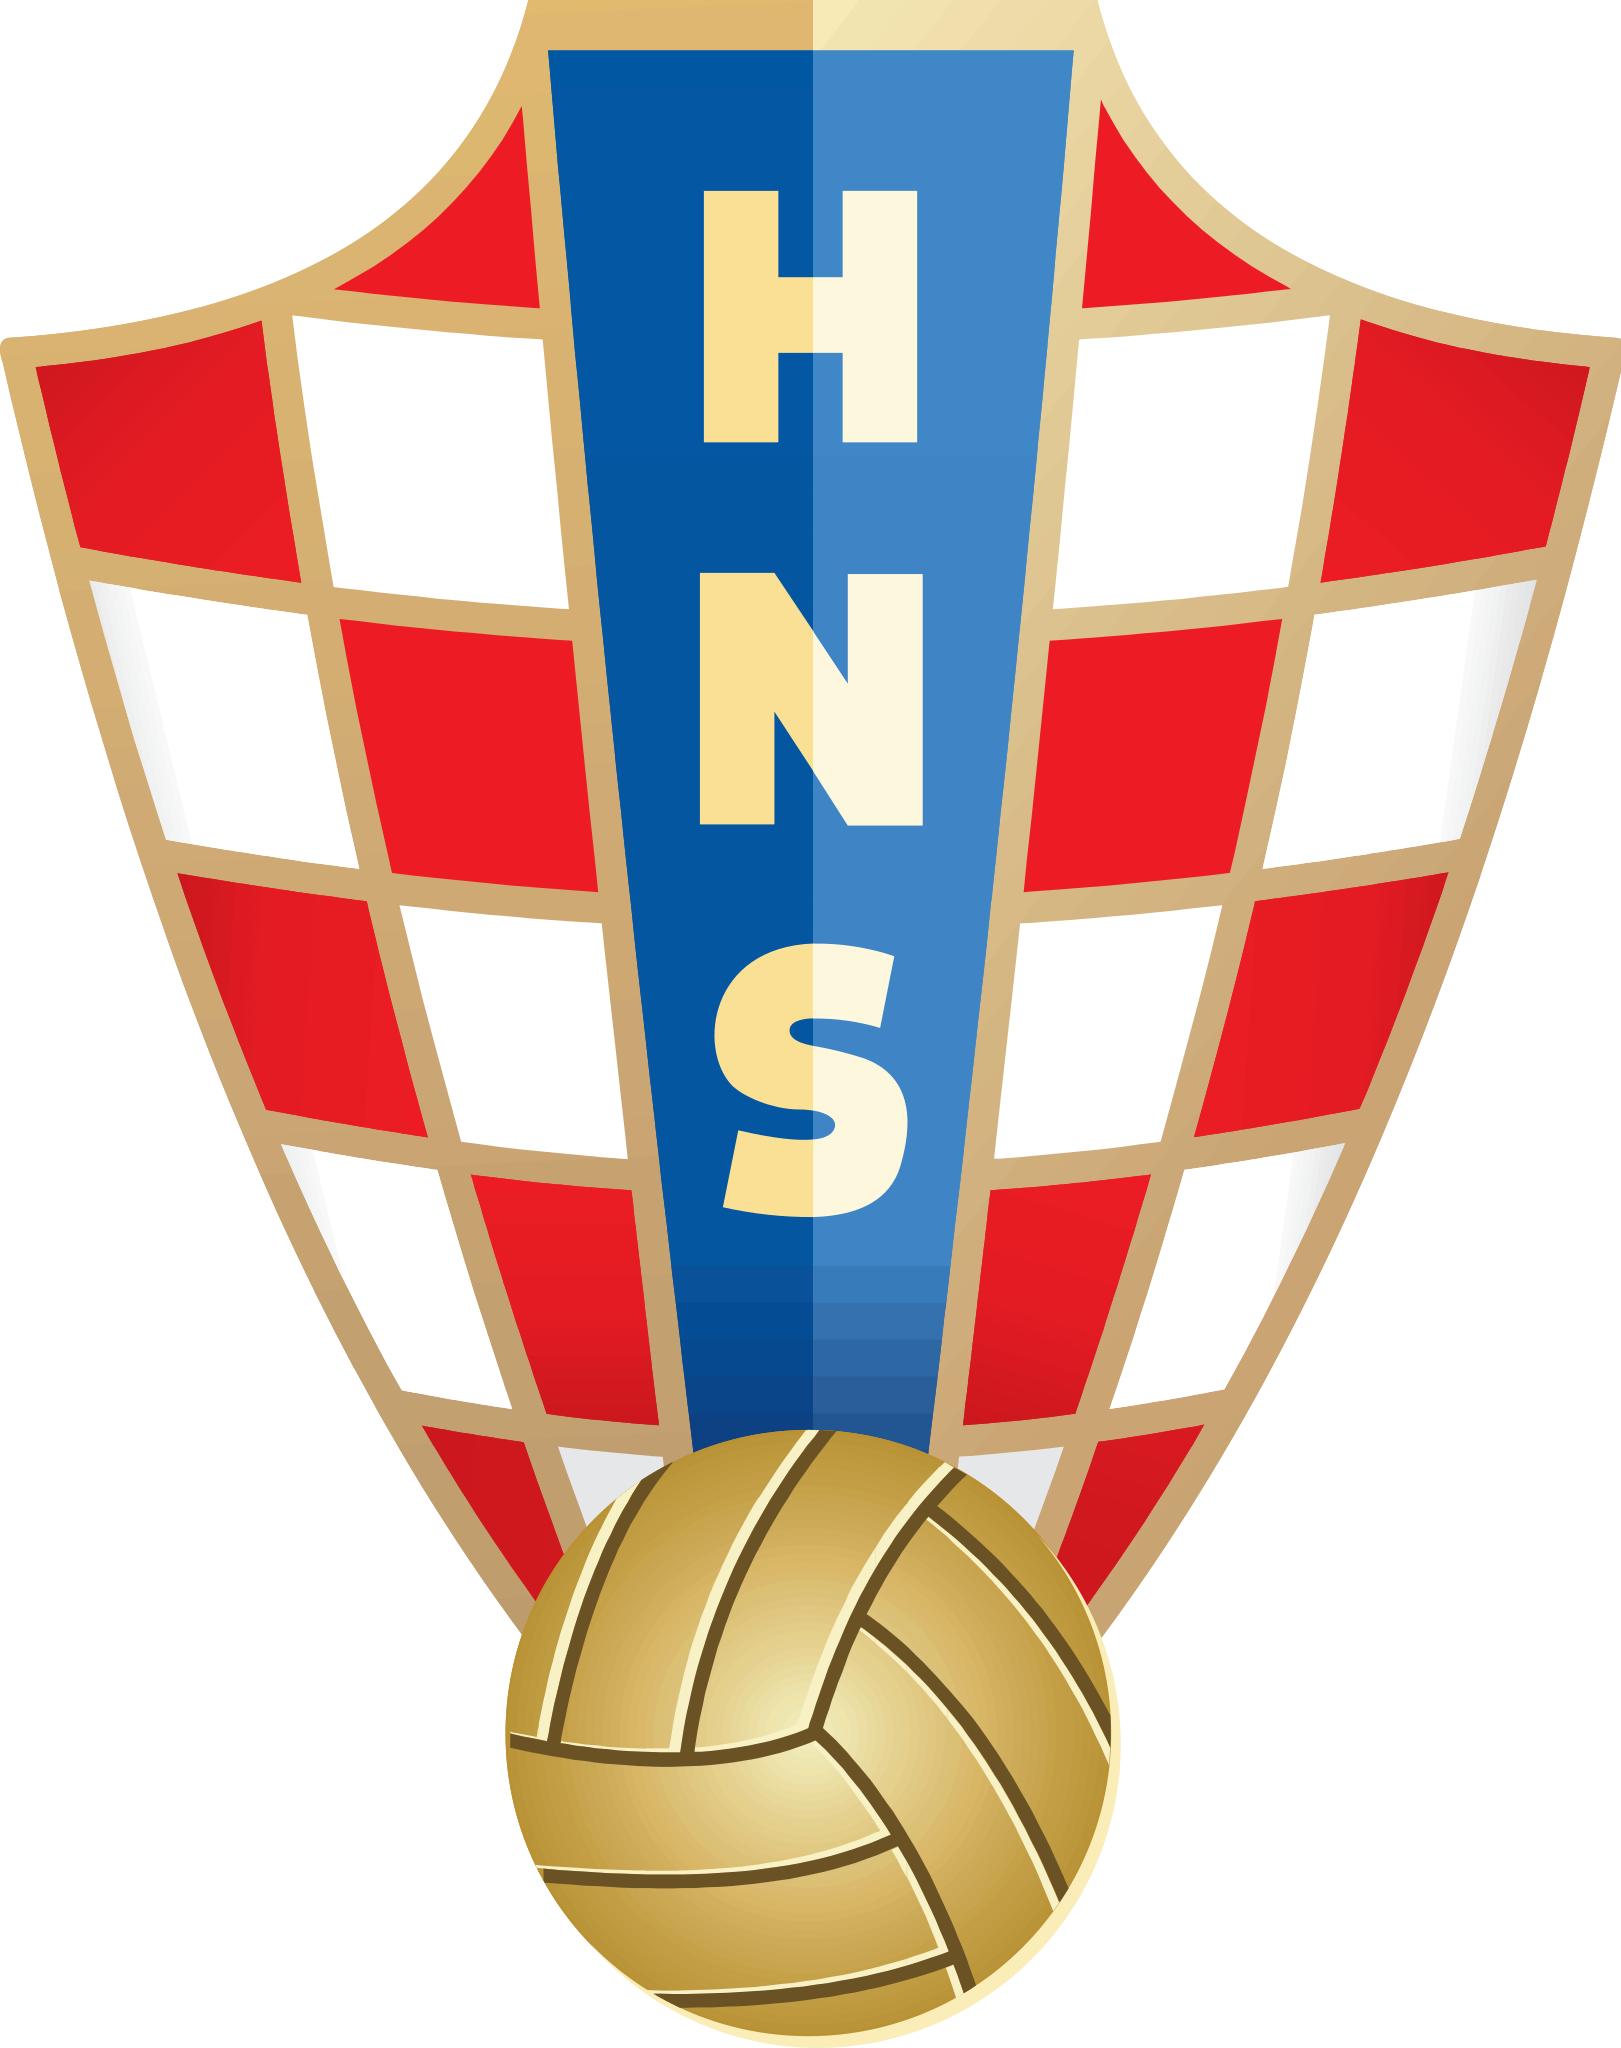 Croatian Football